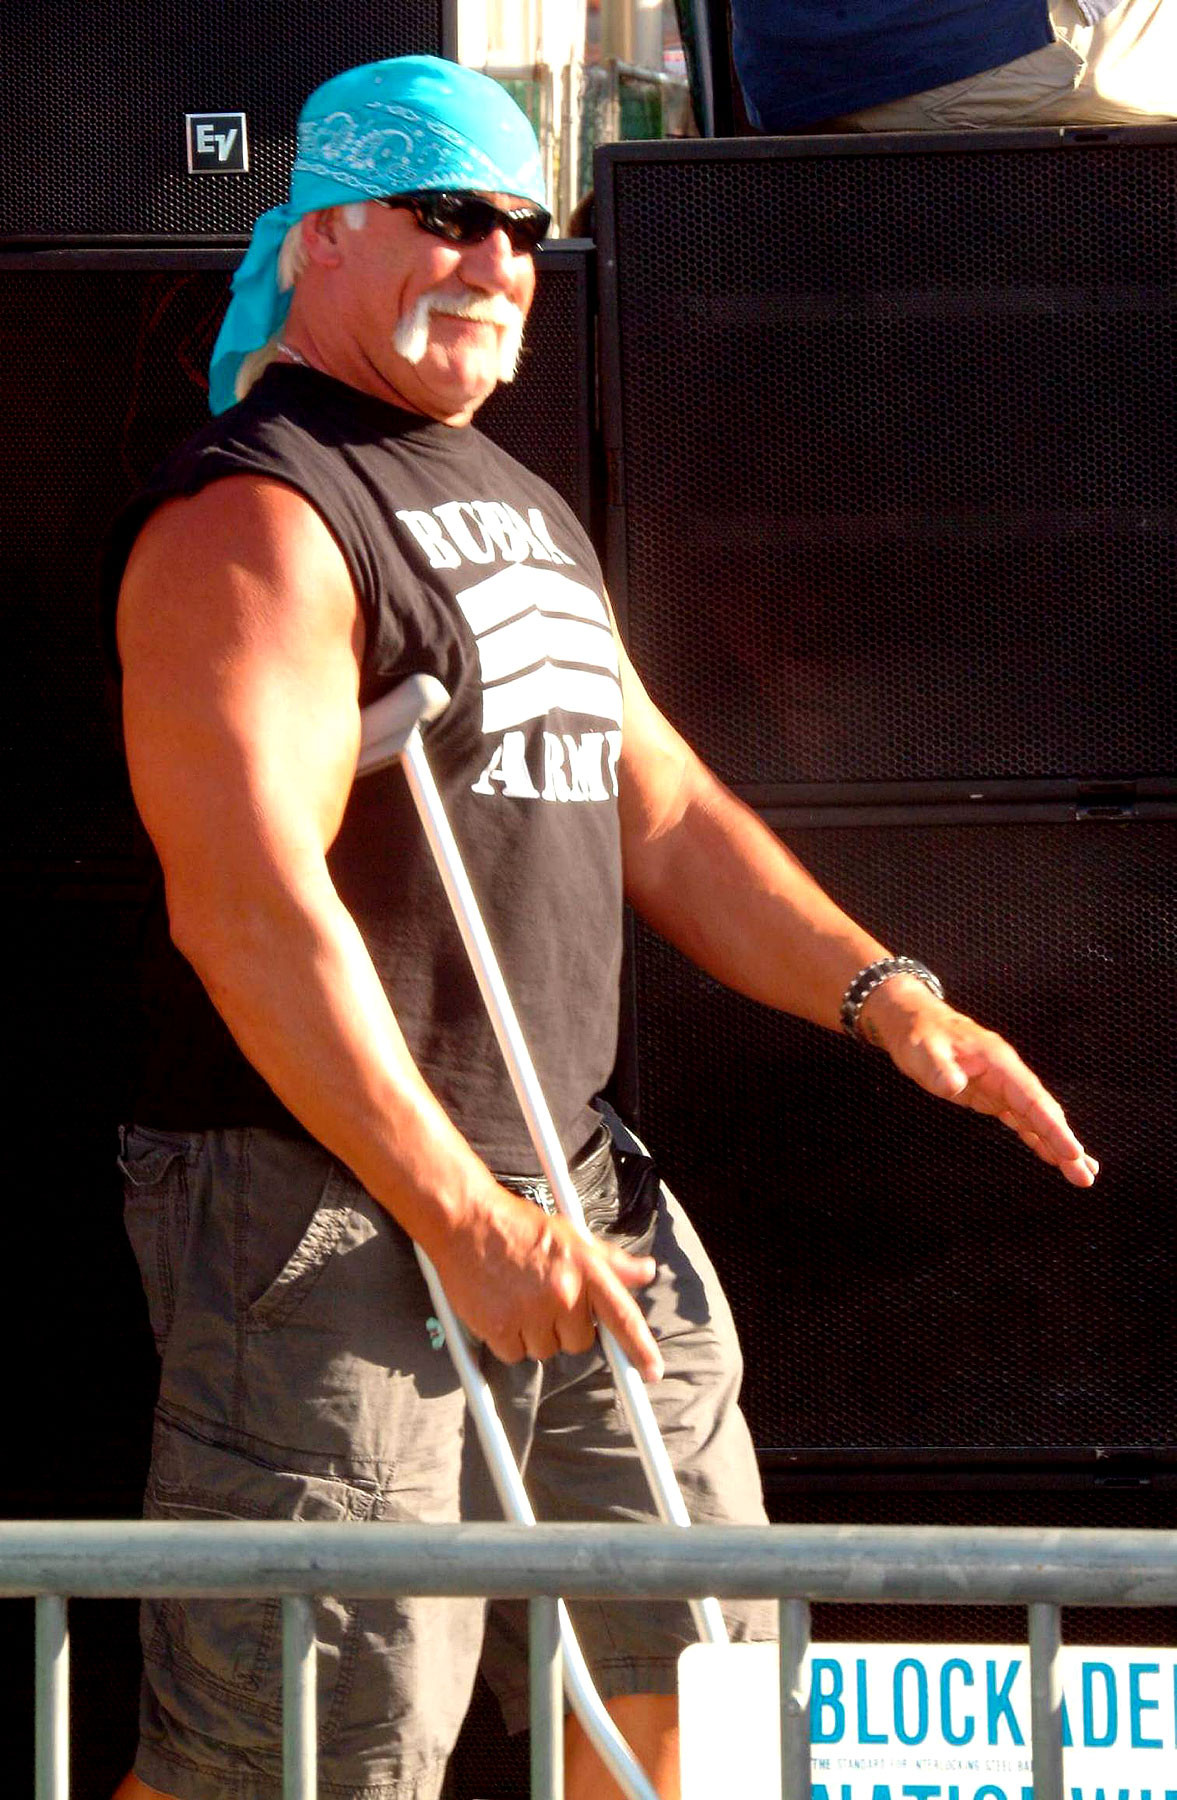 Халк Хоган (Hulk Hogan)